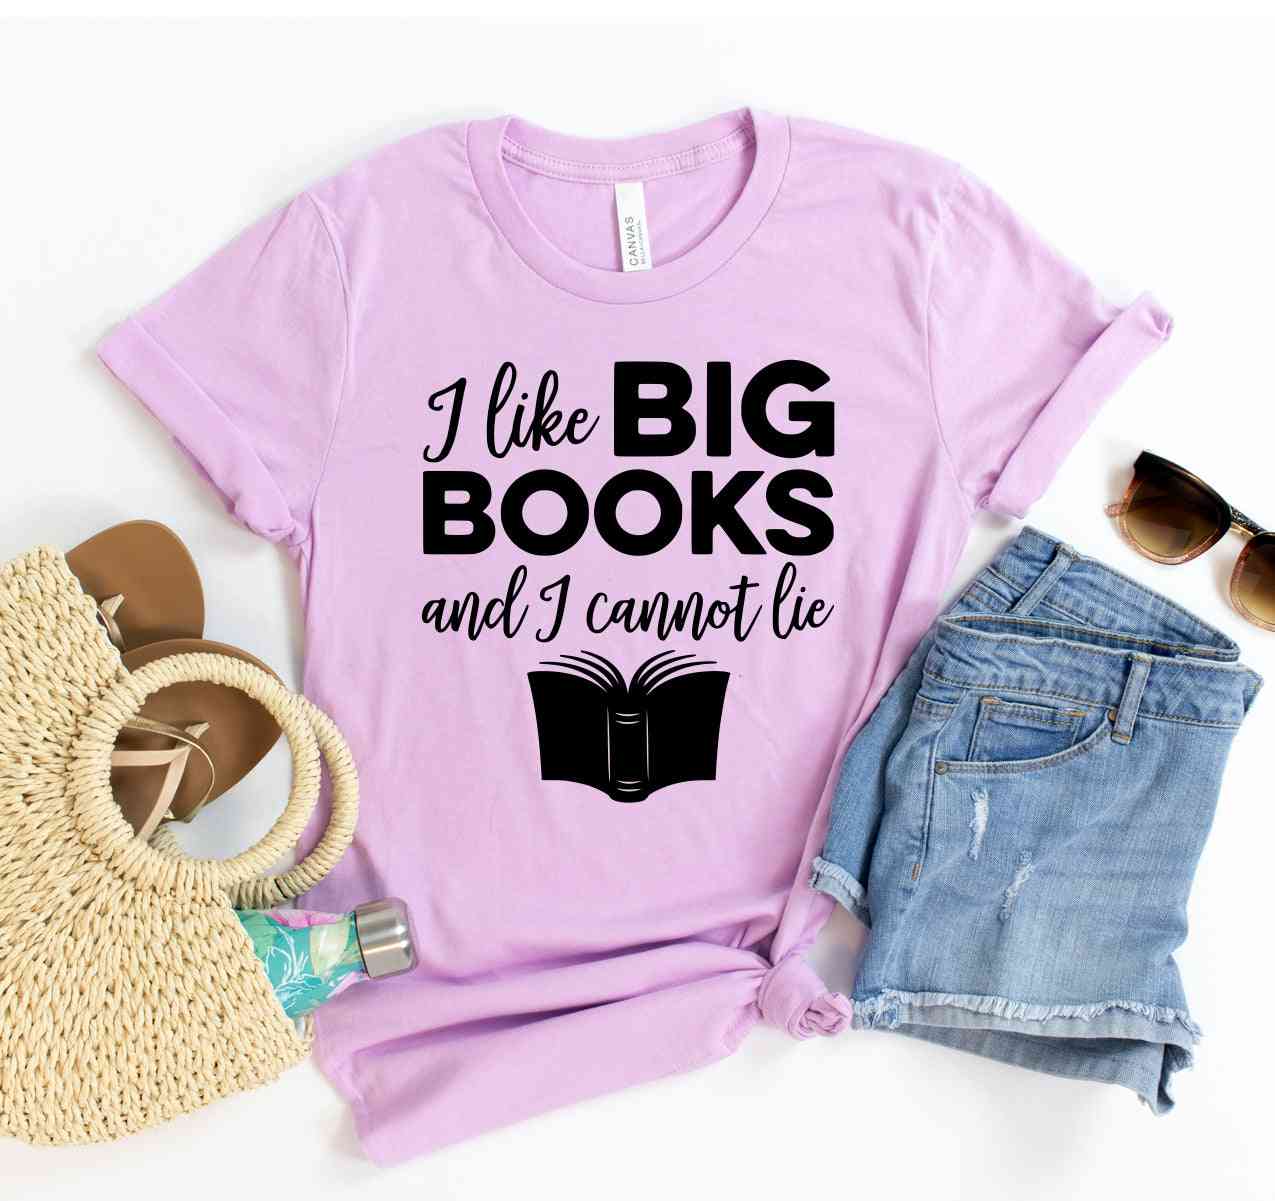 Mi piacciono i libri grandi e non posso mentire t-shirt